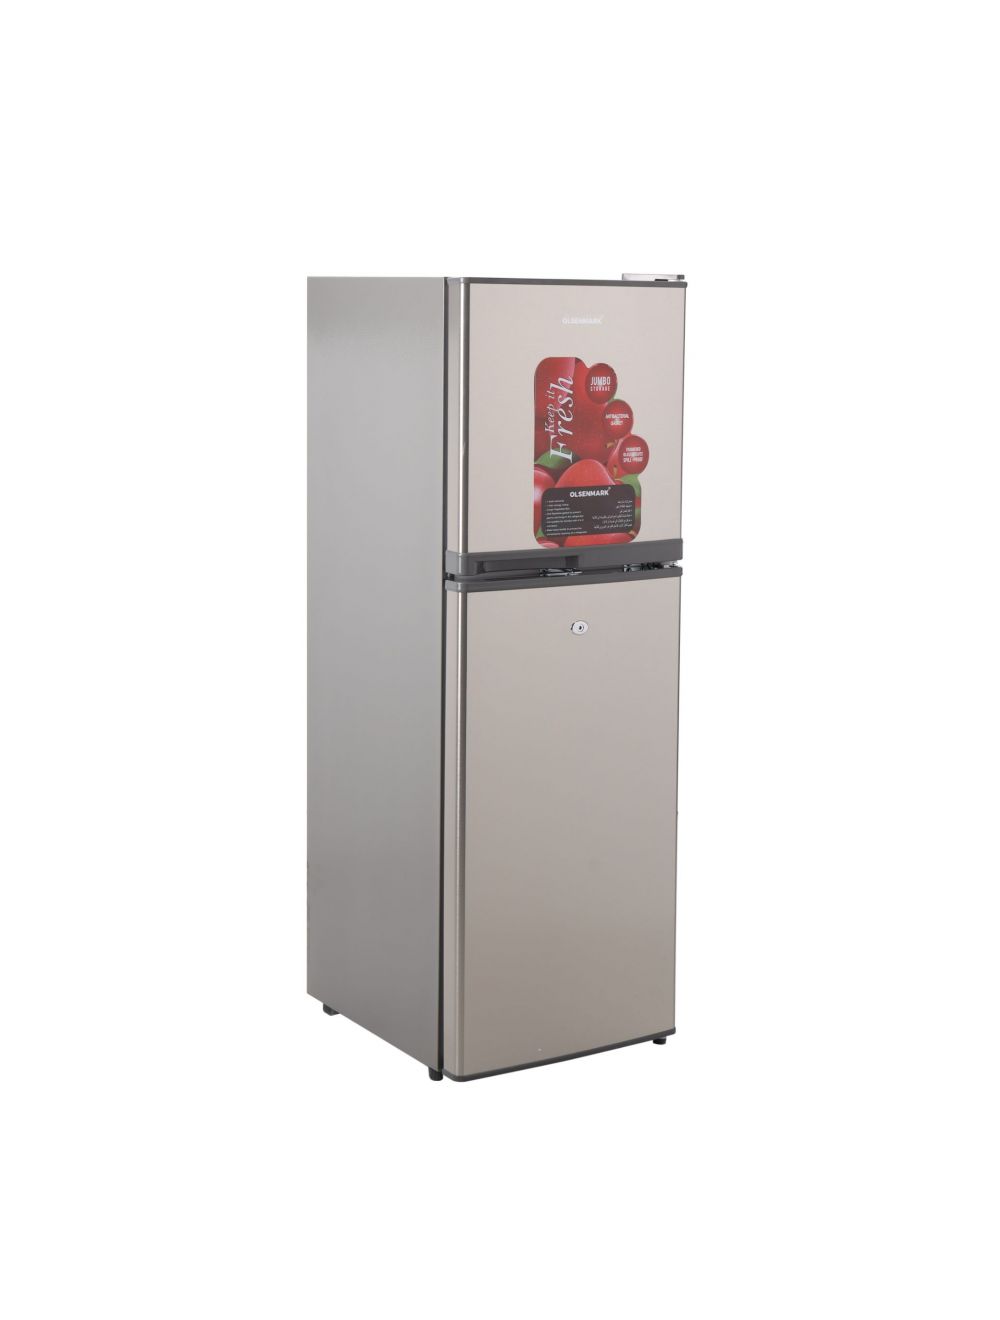 Olsenmark 180L Double Door Refrigerator